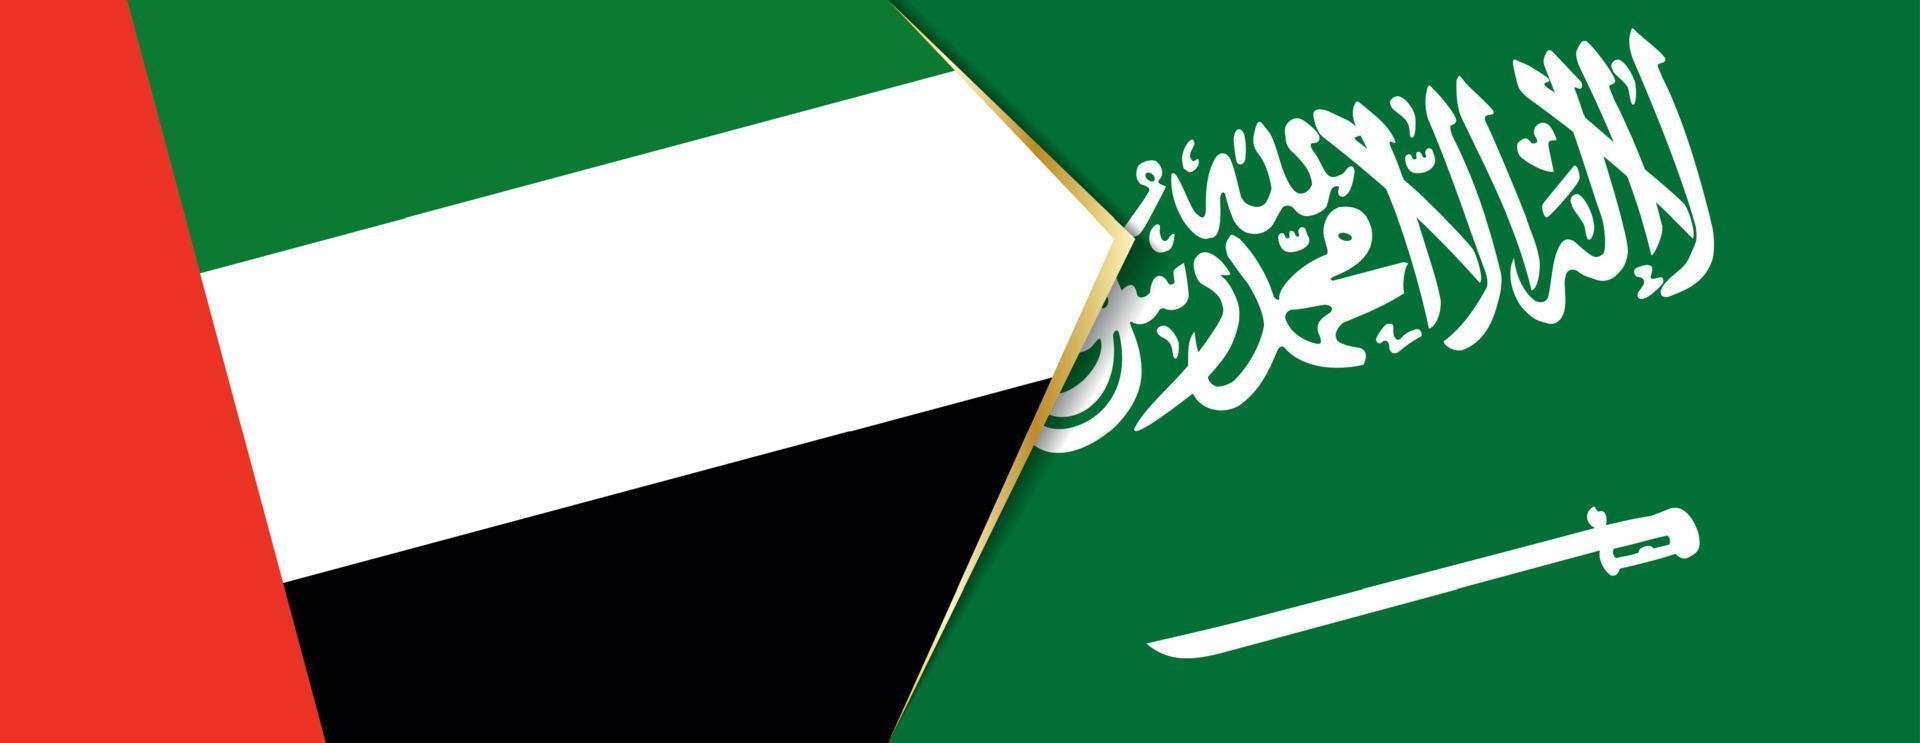 unido árabe emiratos y saudi arabia banderas, dos vector banderas